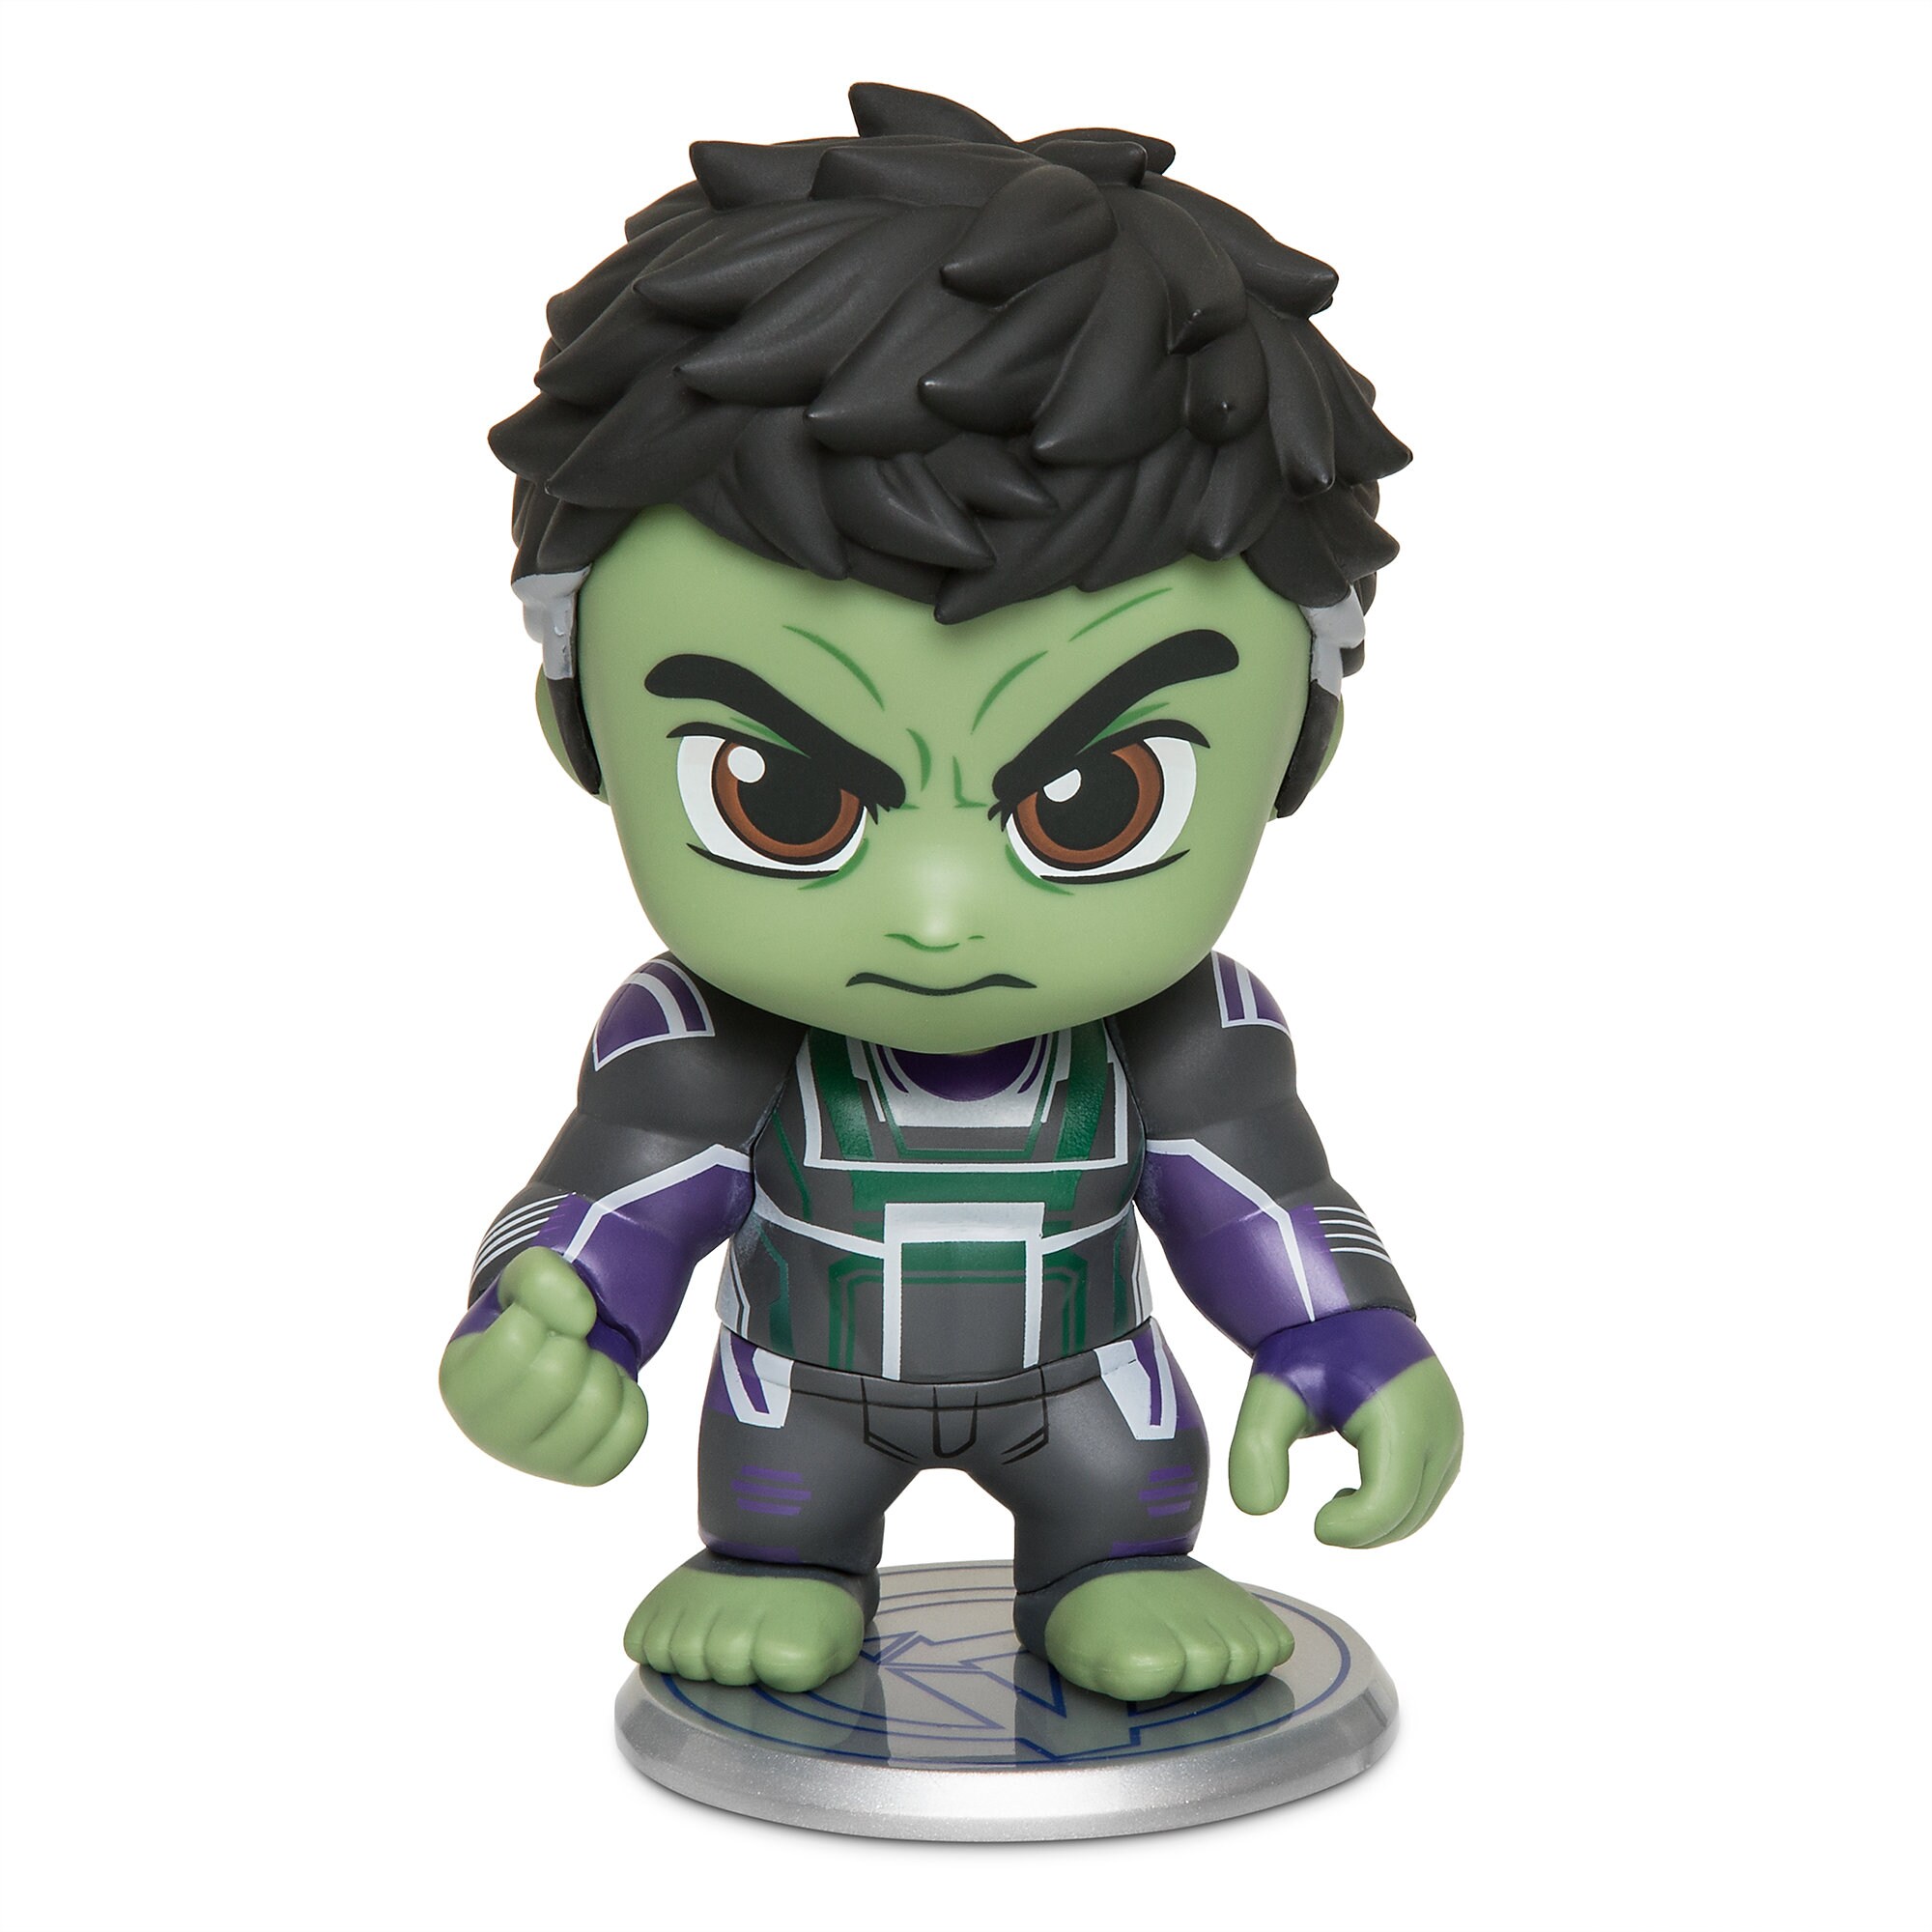 Hulk Cosbaby Bobble-Head Figure by Hot Toys - Marvel's Avengers: Endgame